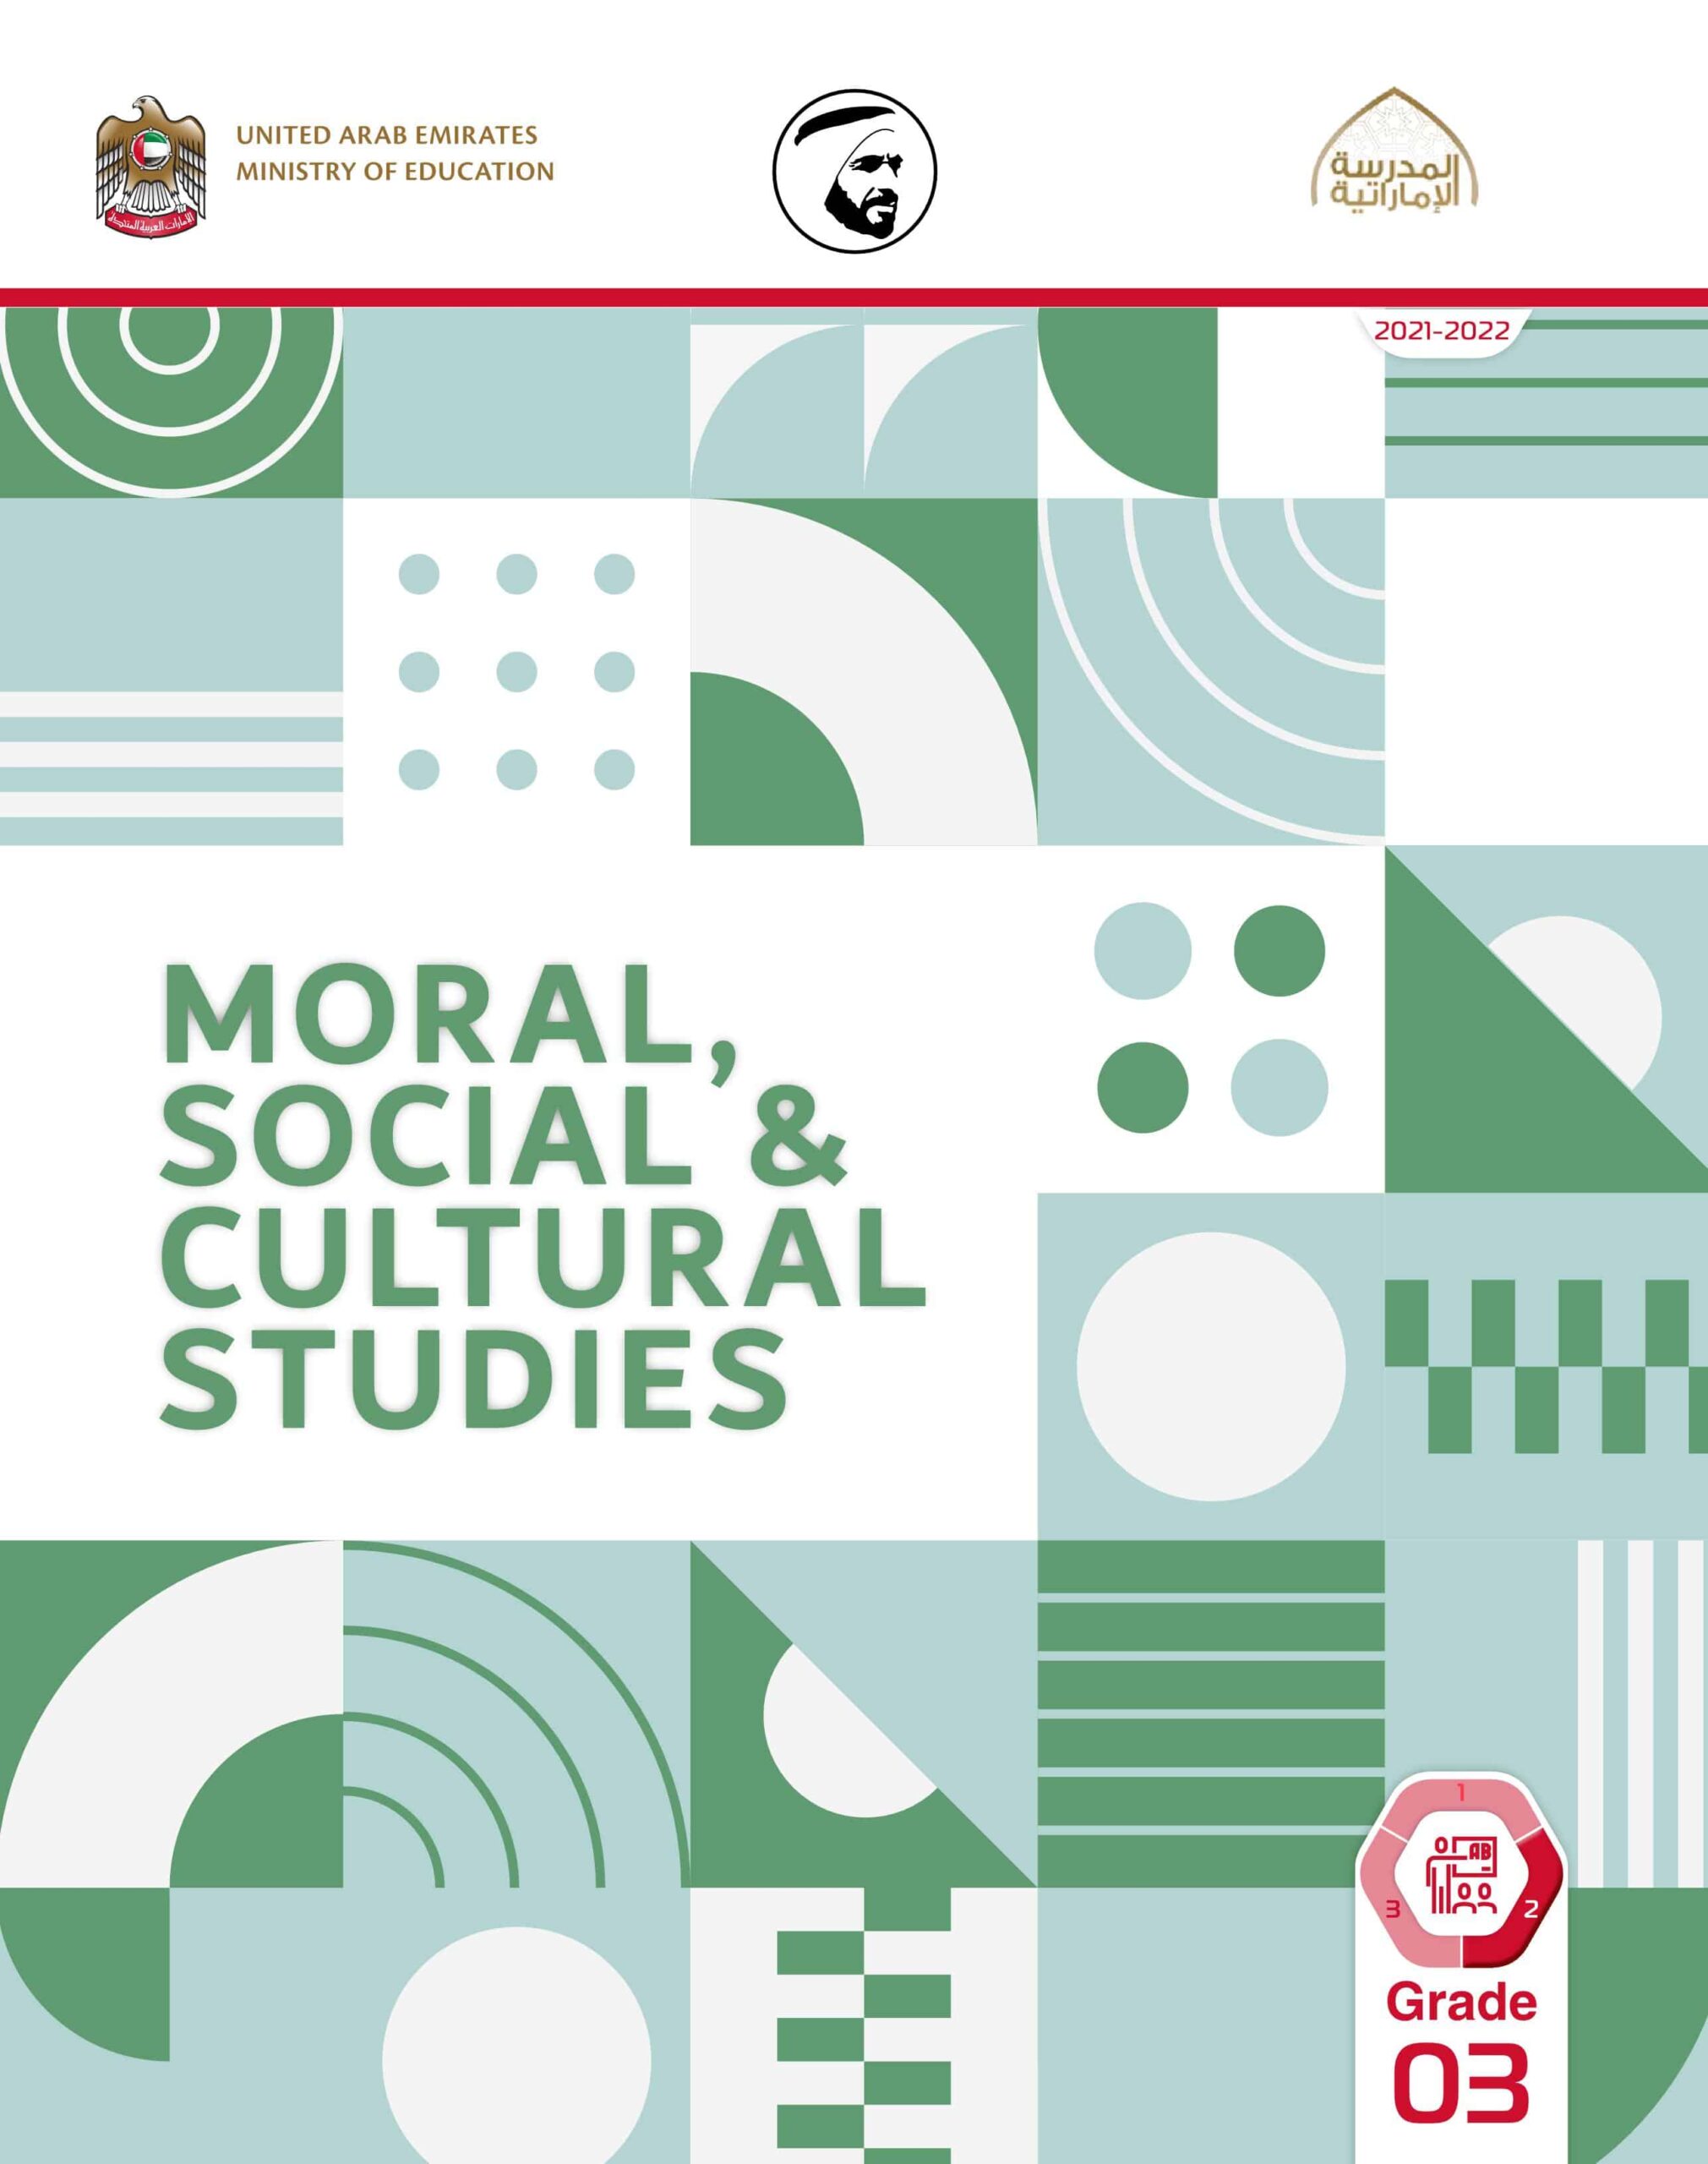 كتاب دليل المعلم لغير الناطقين بها Moral Social & Cultural Studies الصف الثالث الفصل الدراسي الثاني 2021-2022